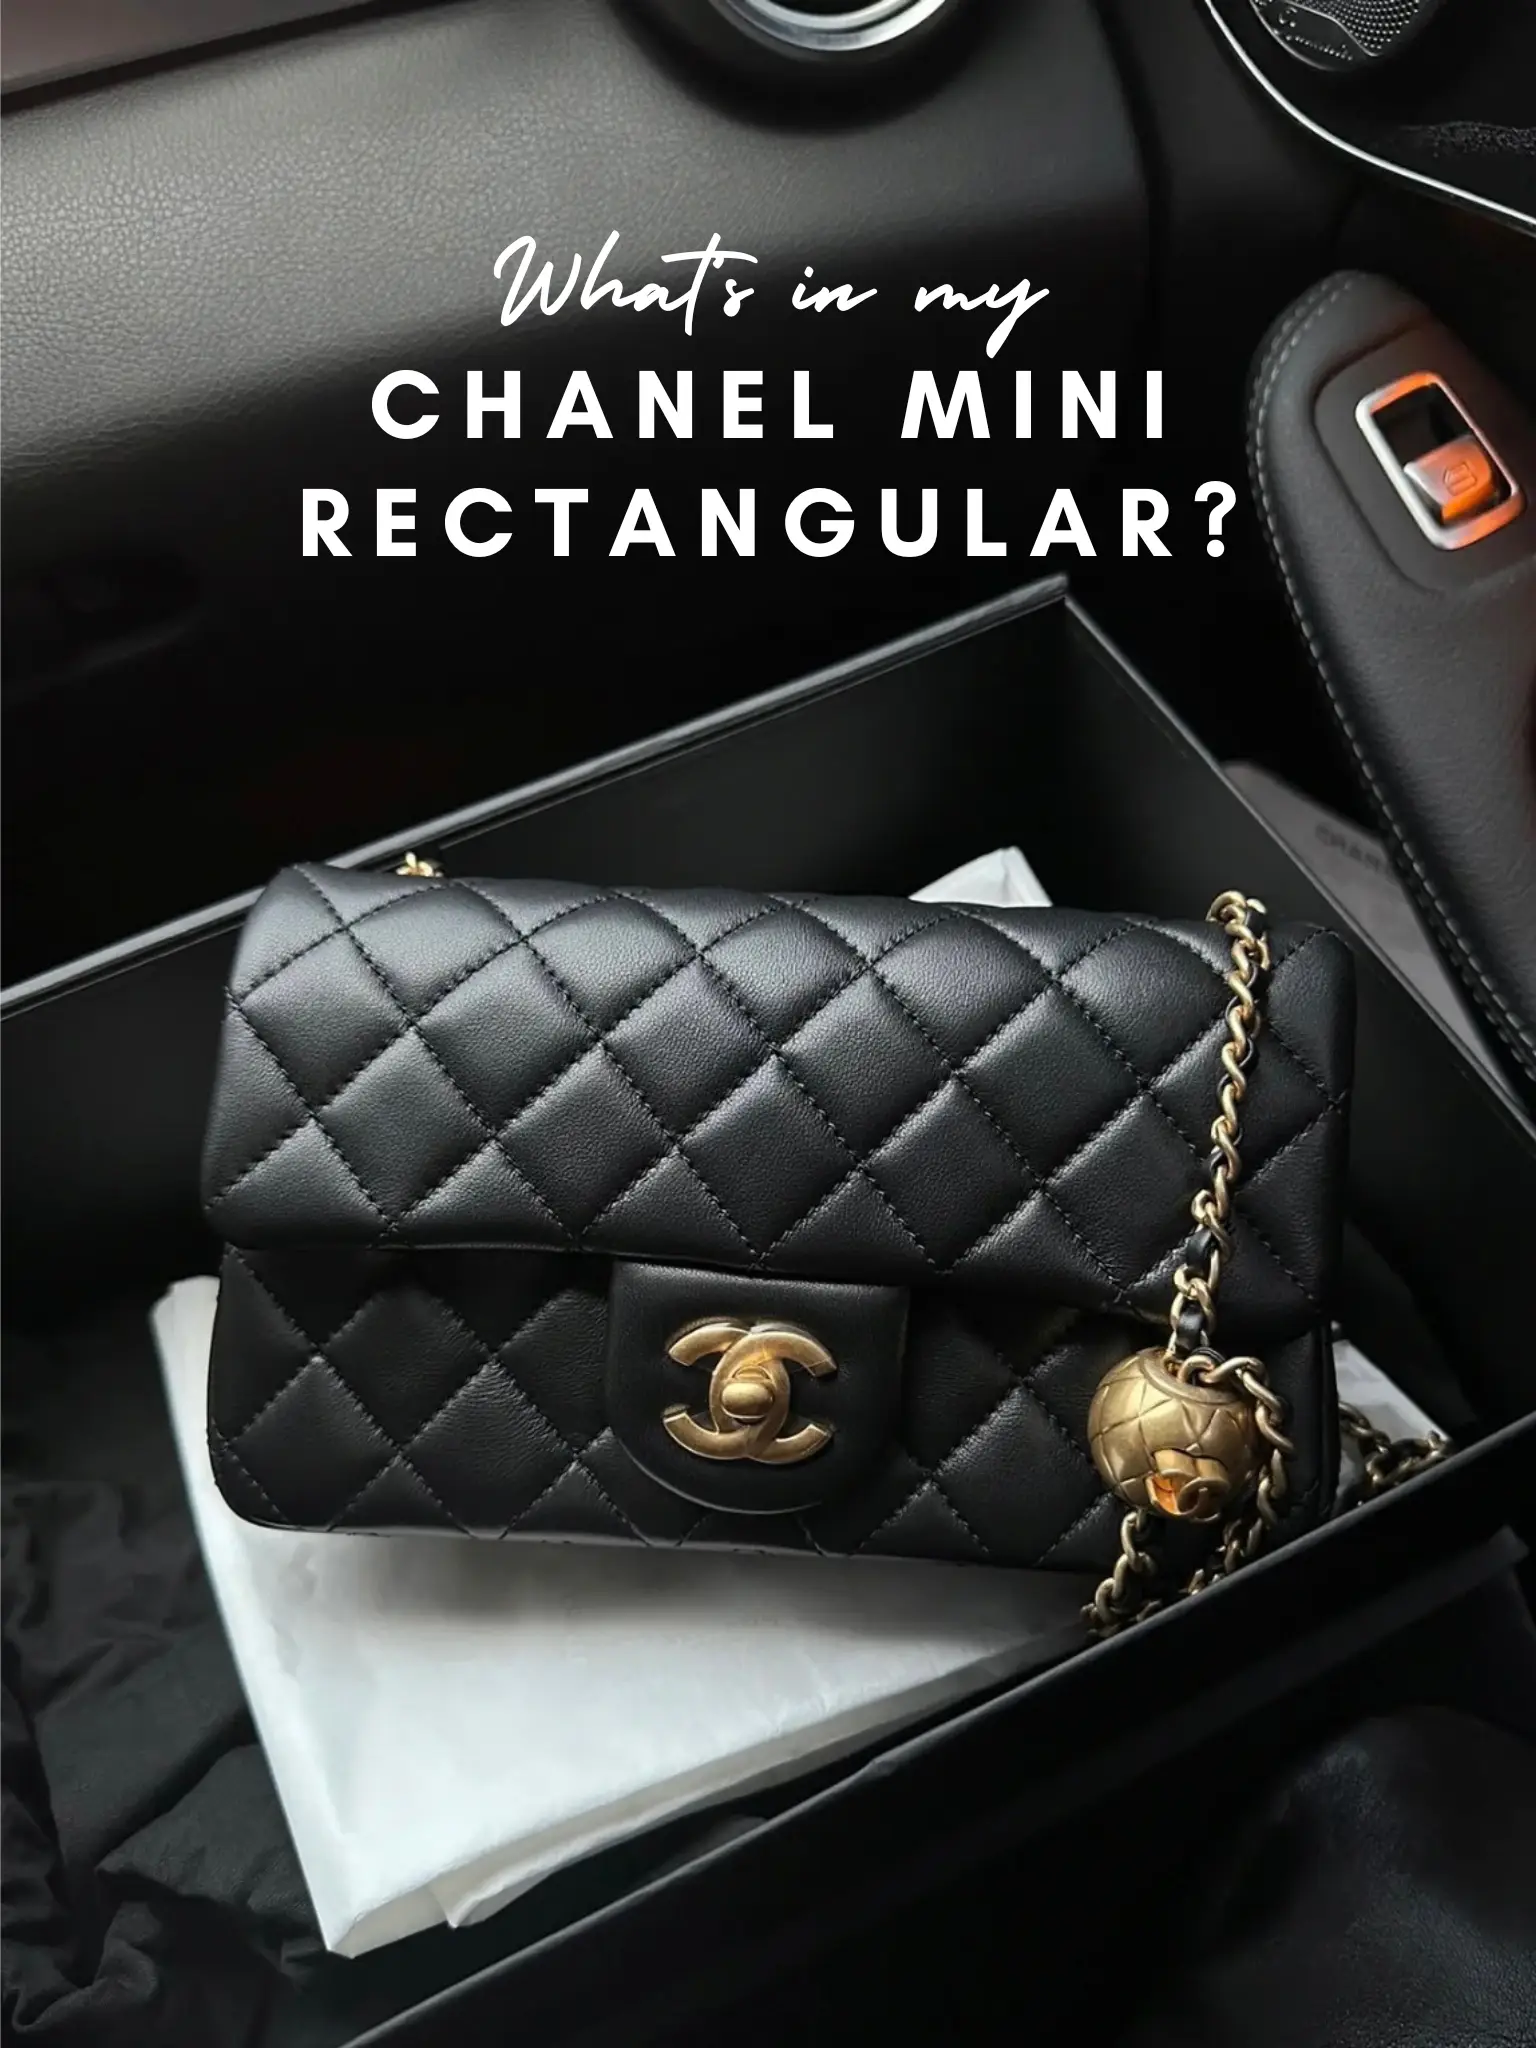 What's in my Chanel Mini Rectangular?, Galeri disiarkan oleh Ashley Ahn ☁️